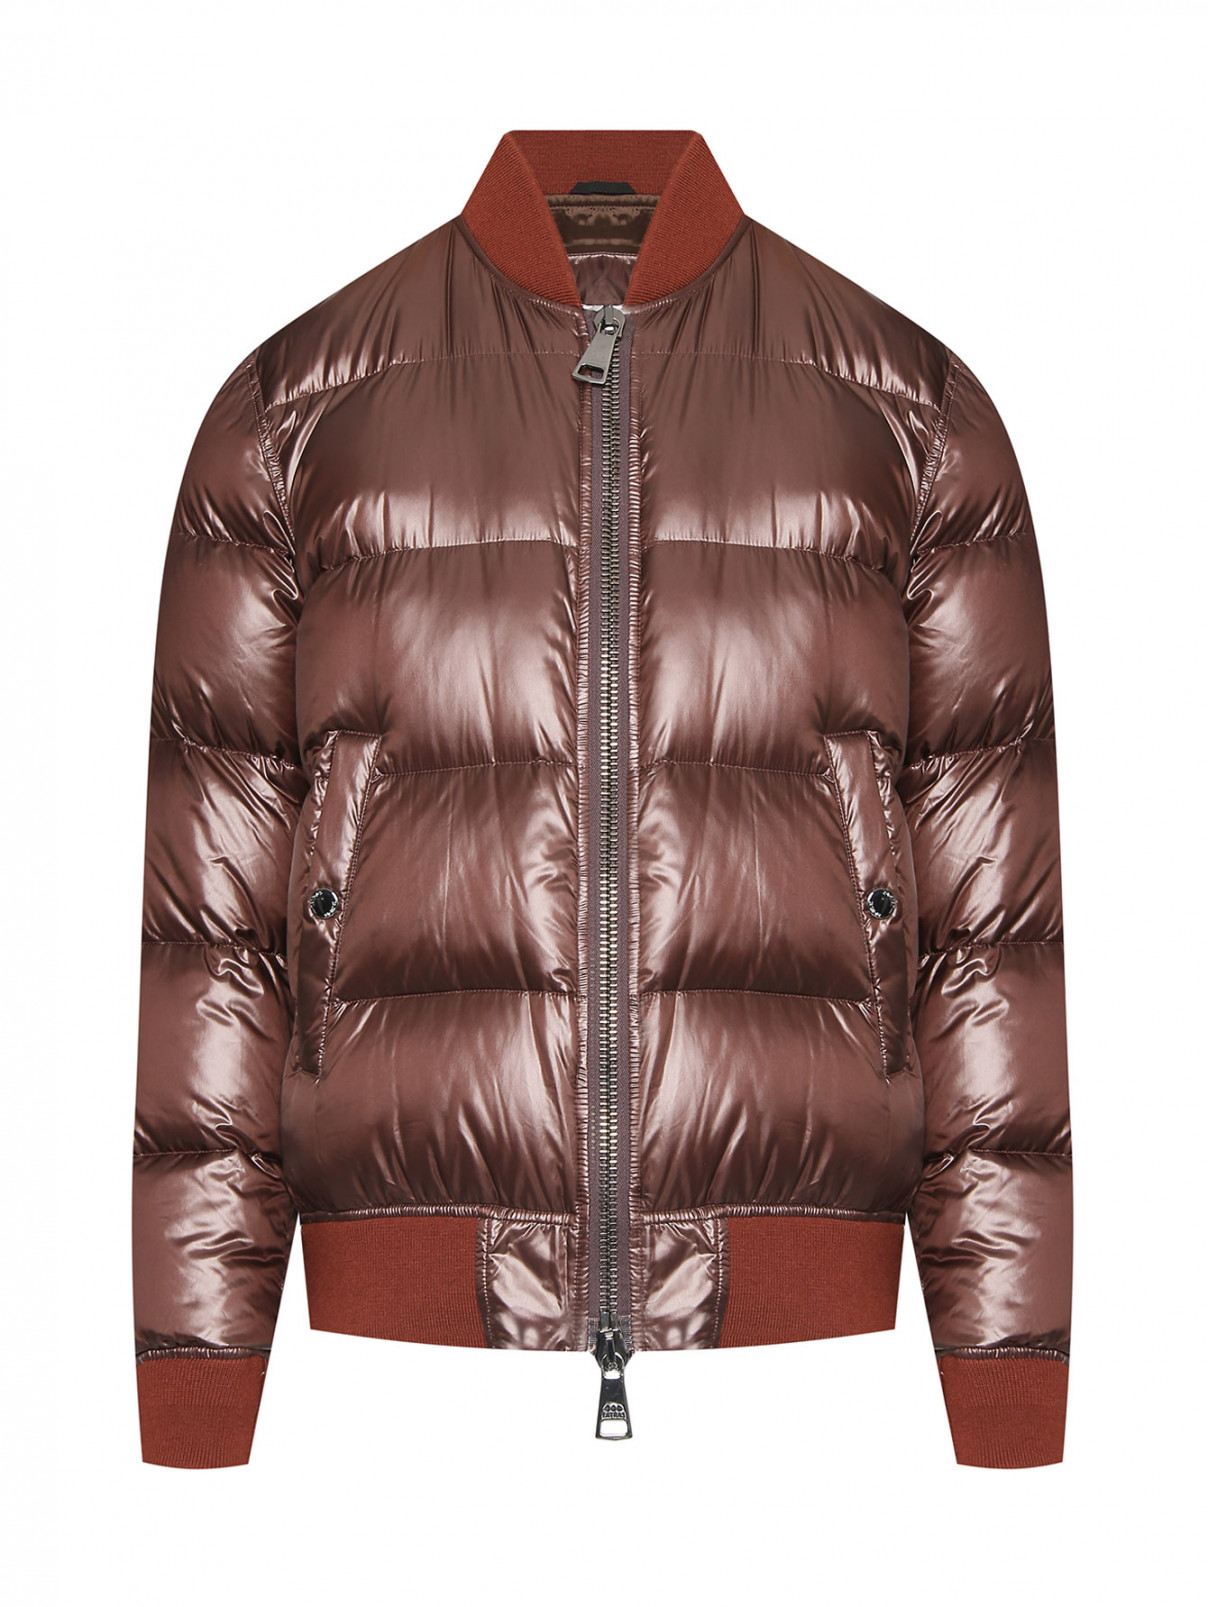 Пуховая куртка-бомбер с карманами Tatras  –  Общий вид  – Цвет:  Коричневый